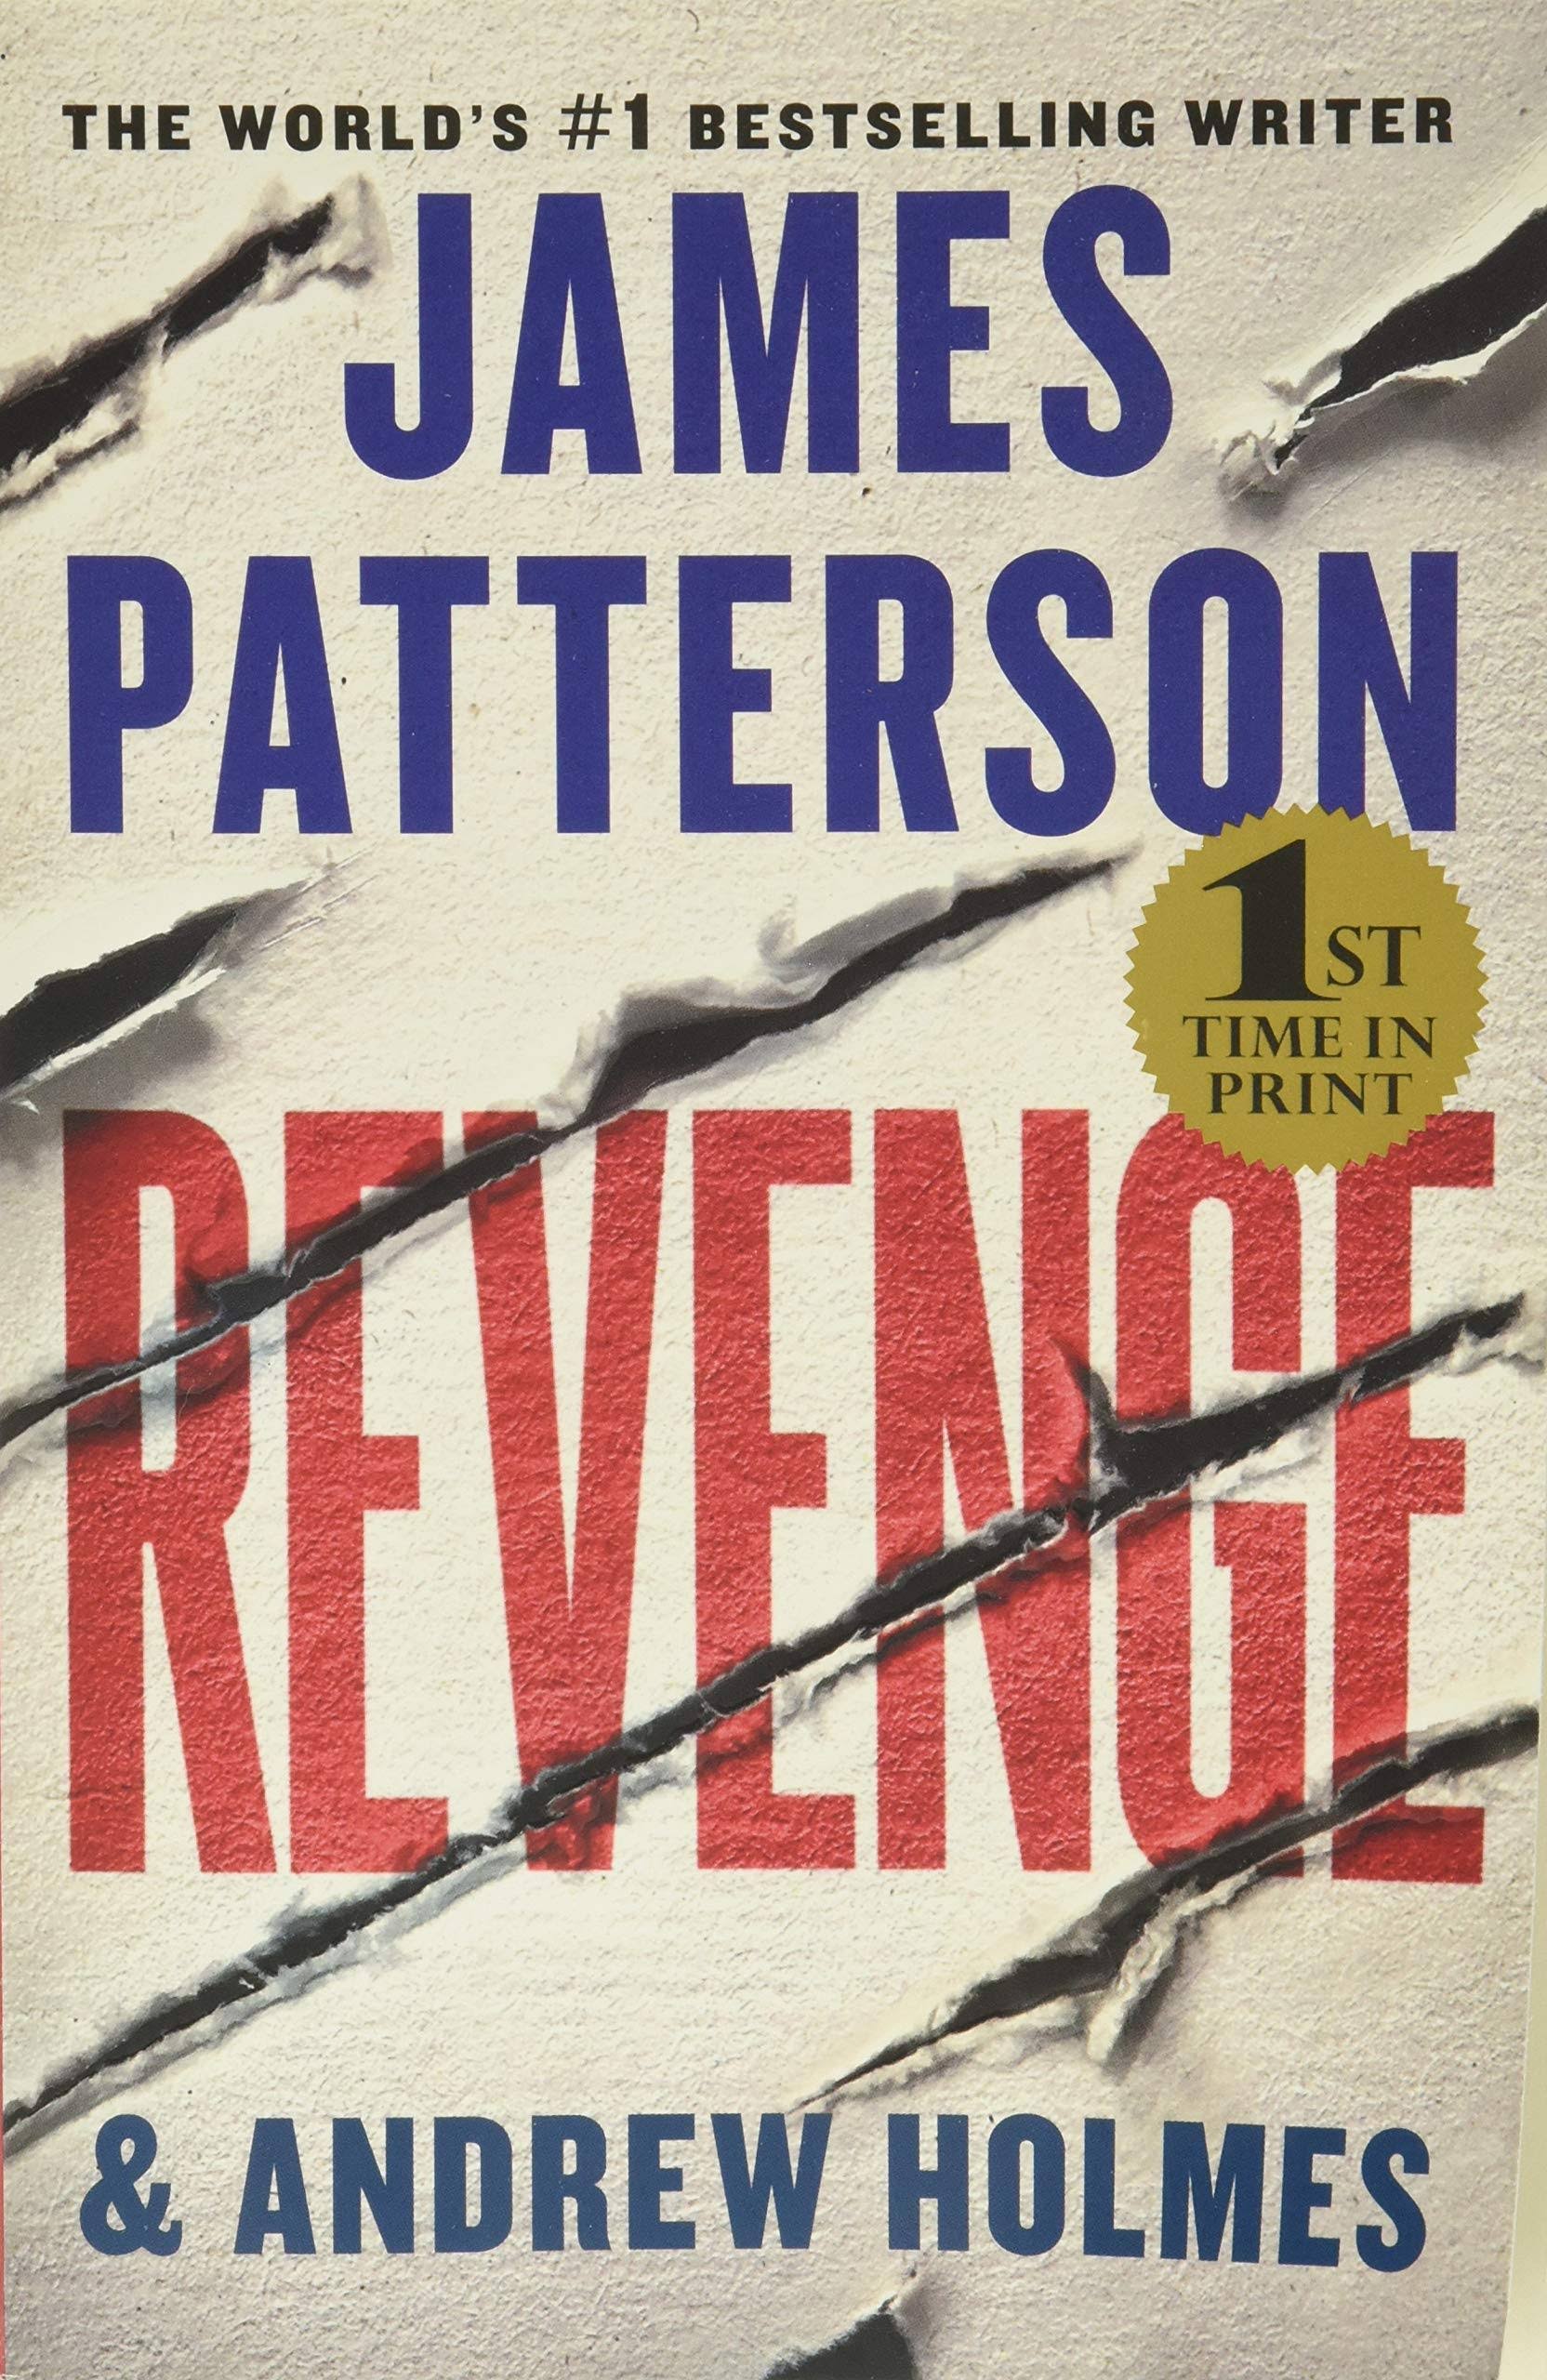 Revenge by James Patterson